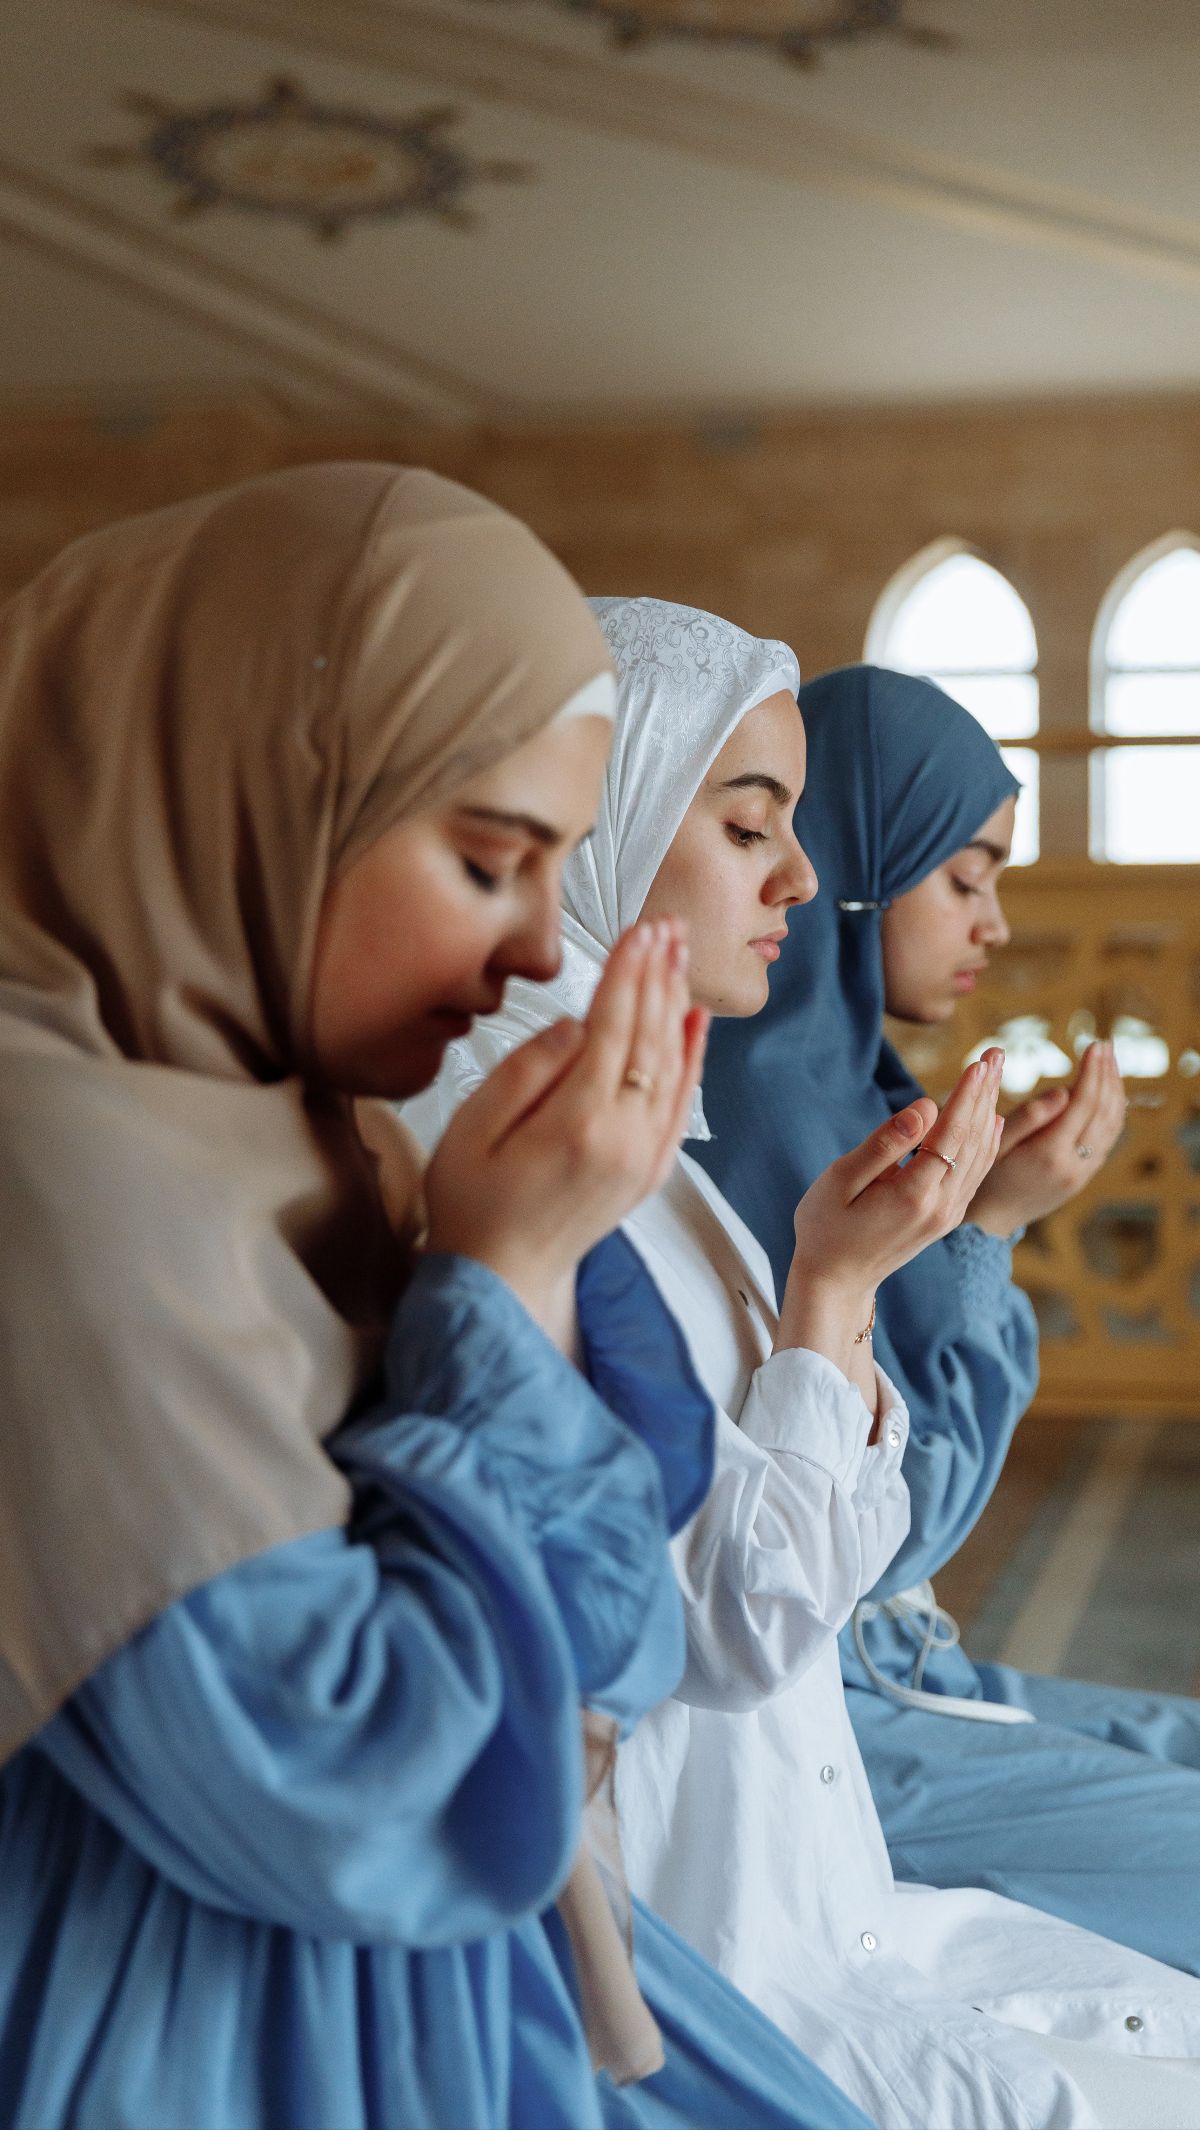 Kumpulan Doa Sehari-hari Umat Islam: Doa Lancar Rezeki, Doa Minta Dapat  Jodoh Hingga Doa Dapat Kerja - Halaman 3 - Tribunmanado.co.id